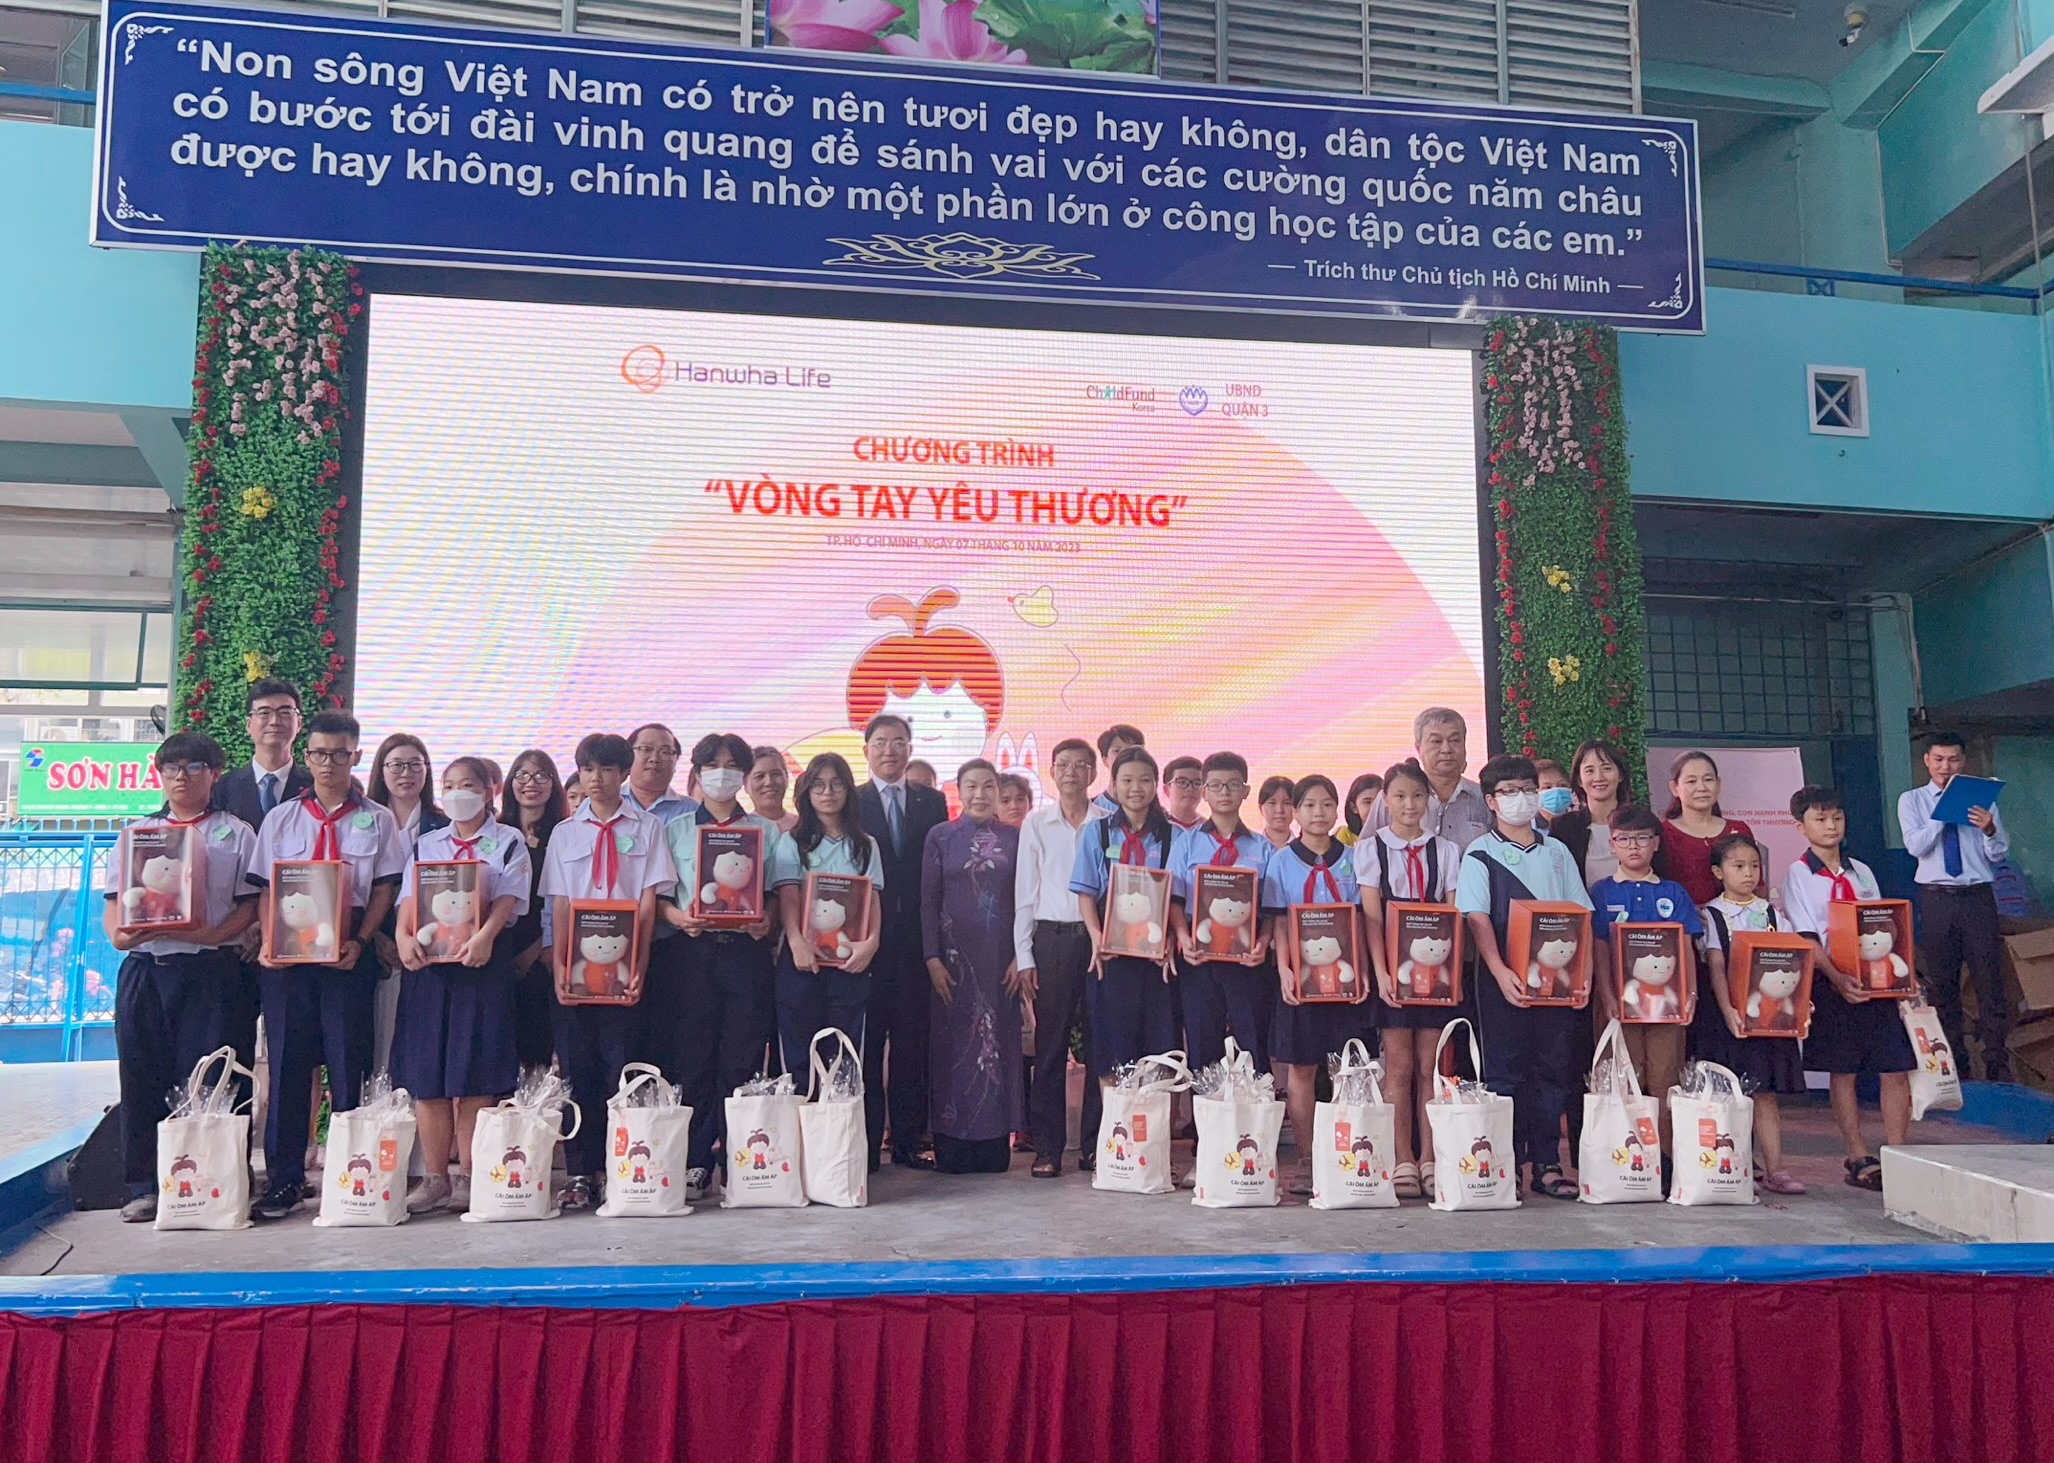 Ban Lãnh đạo cấp cao Hanwha Life, đại diện VACR và đại diện cơ quan chính quyền trao tặng học bổng và quà cho các em học sinh có hoàn cảnh khó khăn trên địa bàn Quận 3, Tp.HCM